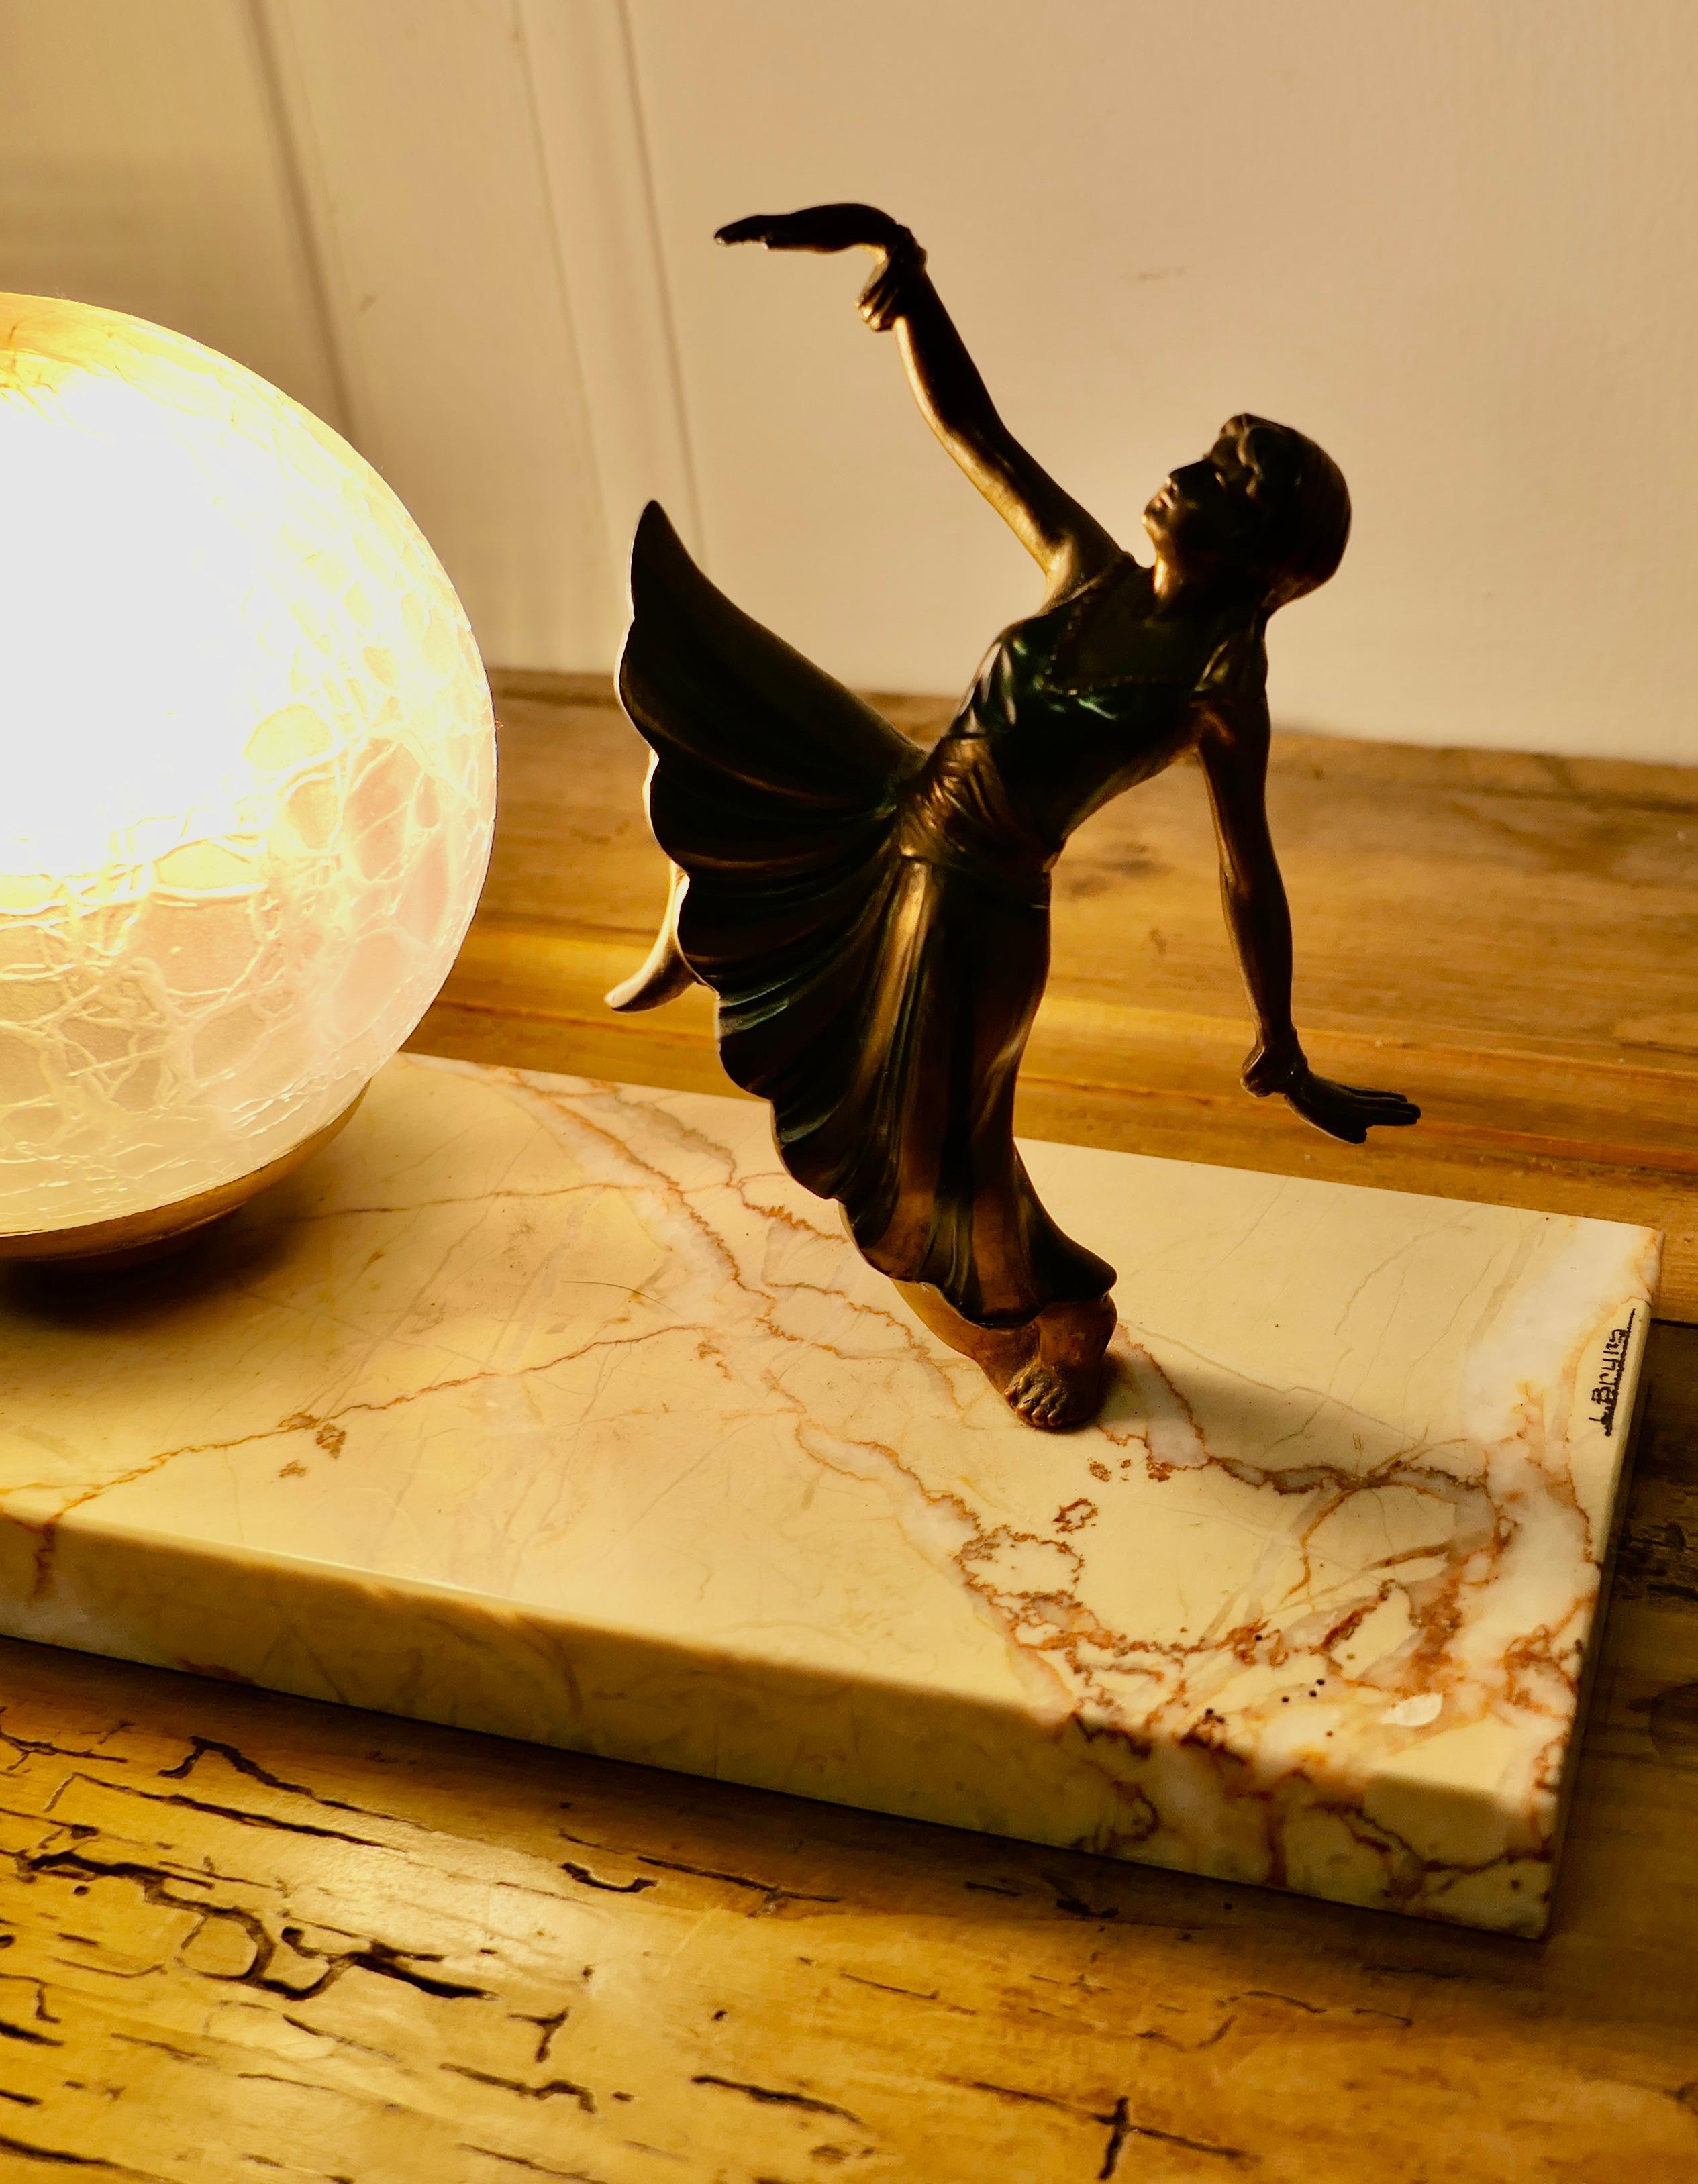 Lampe de table Art déco française, signée L.Bryrs

La lampe est posée sur une base en marbre, la danseuse est peinte sur du fer.
La lampe est en bon état général et l'abat-jour est d'origine
Une signature est apposée sur la base en marbre
Tous les